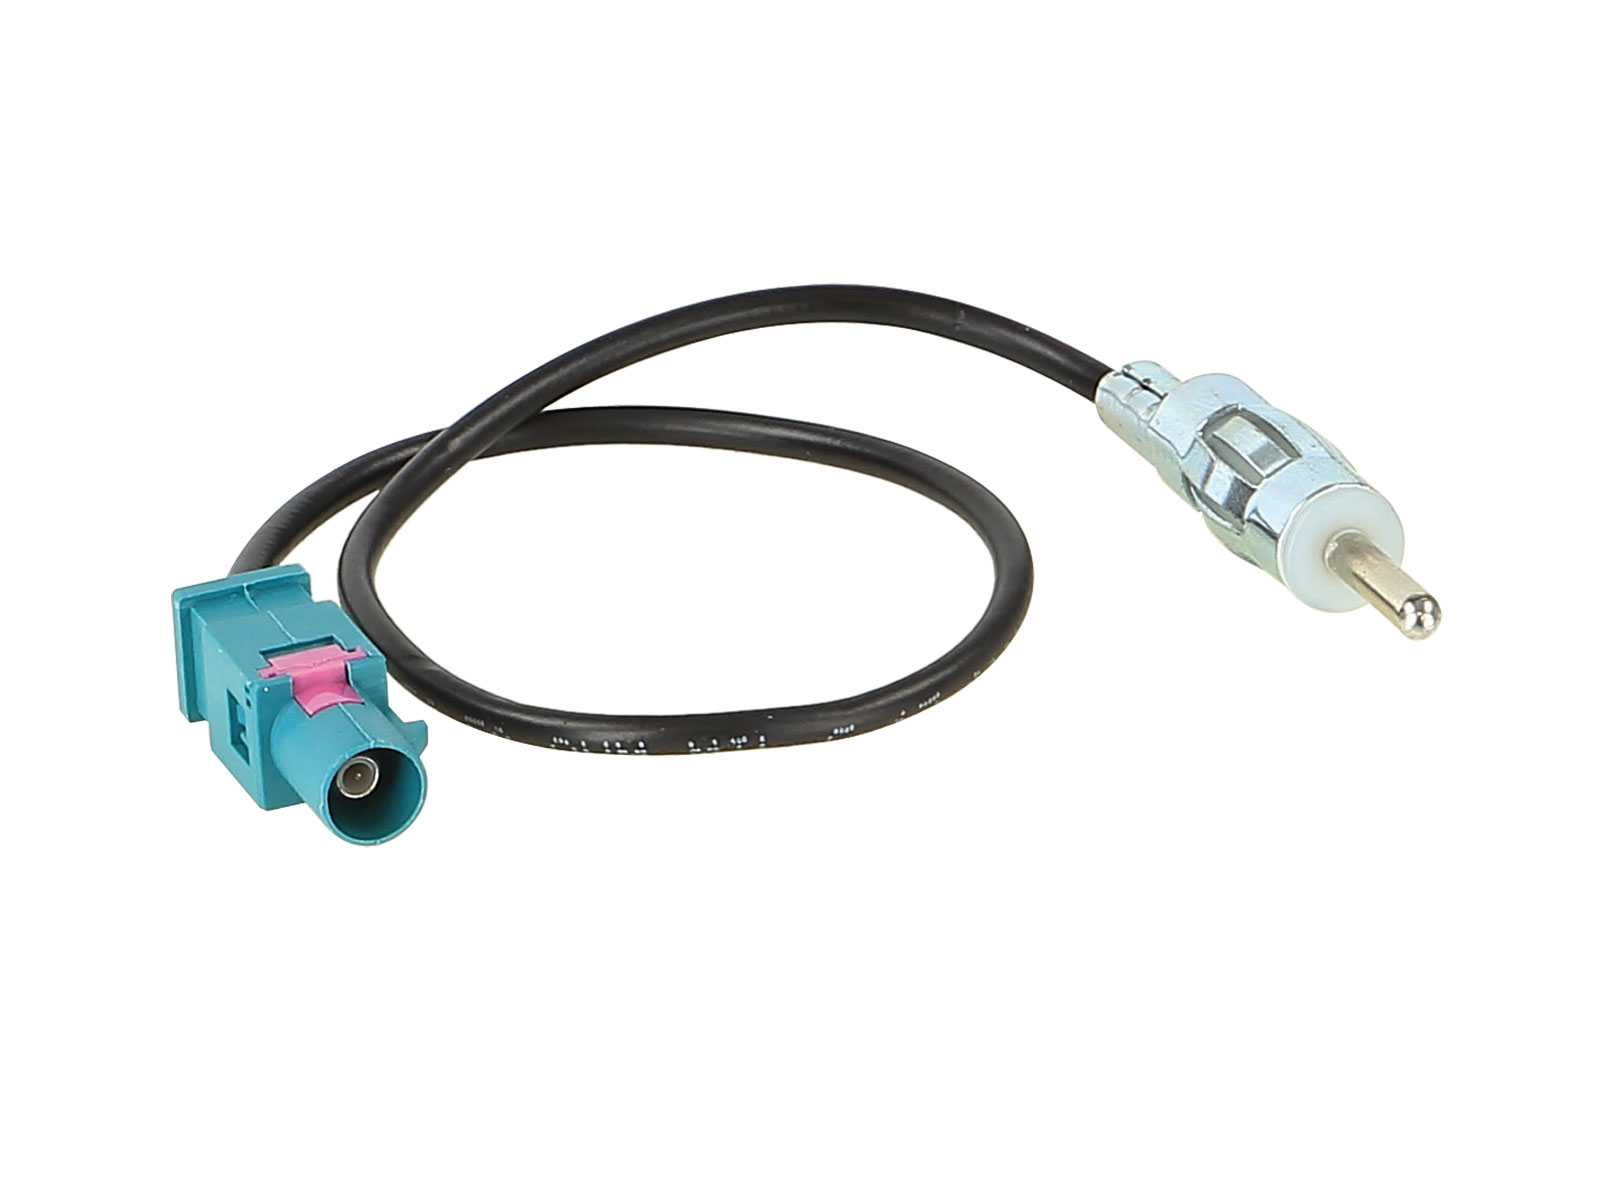 Antennenadapter kompatibel mit Audi ab Bj. 2002 adaptiert von Fakra (m) auf DIN (m)